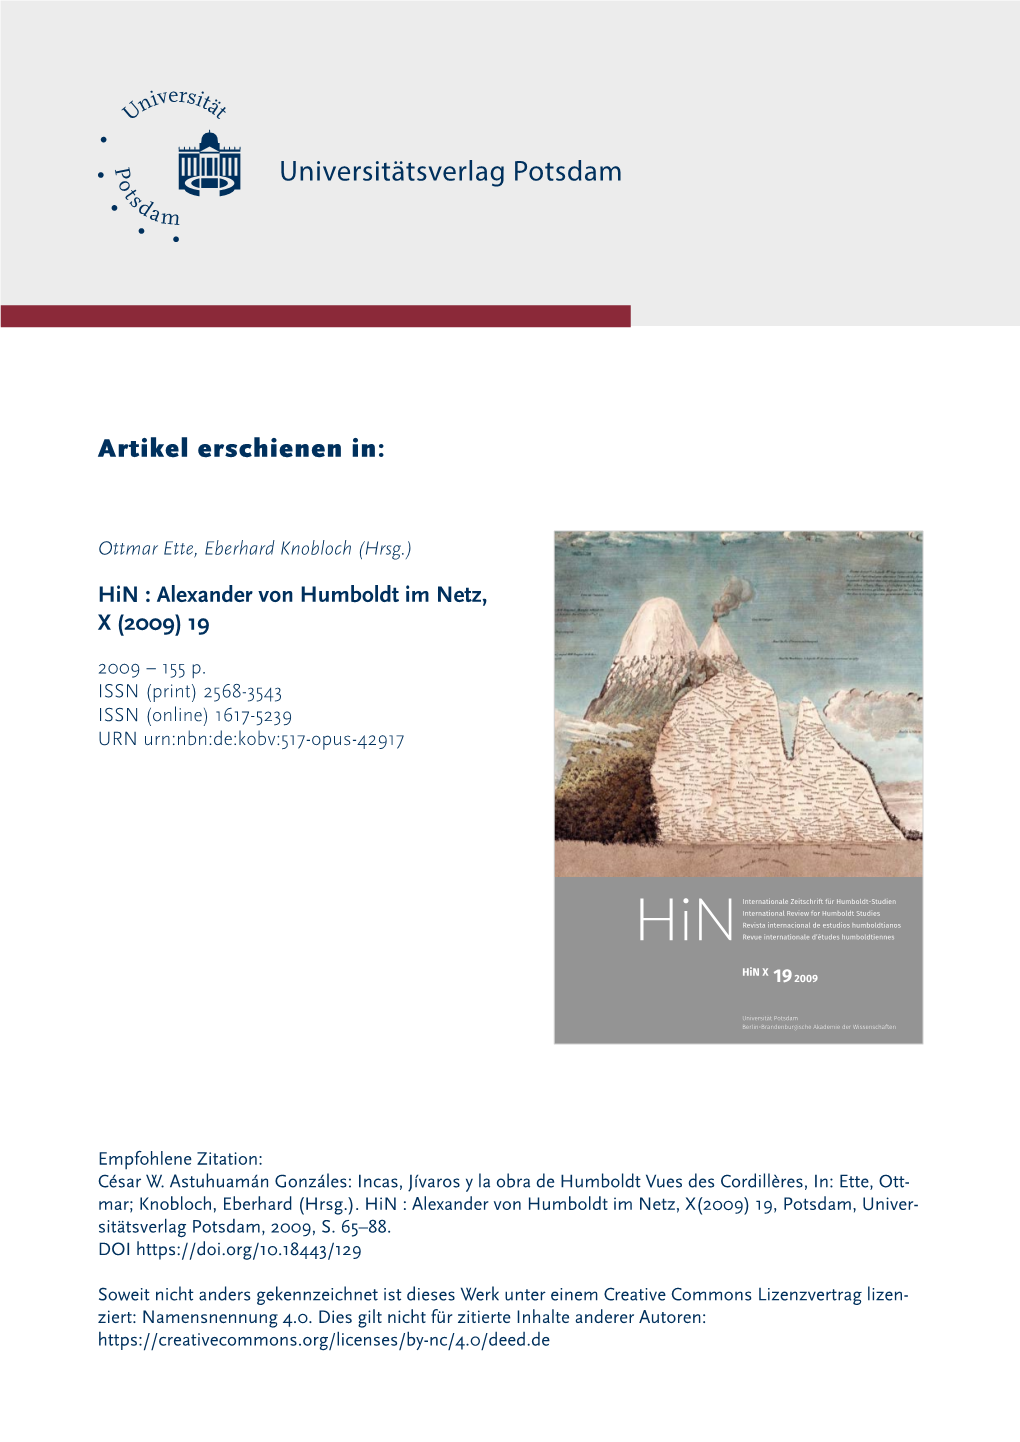 Incas, Jívaros Y La Obra De Humboldt Vues Des Cordillères, In: Ette, Ott- Mar; Knobloch, Eberhard (Hrsg.)